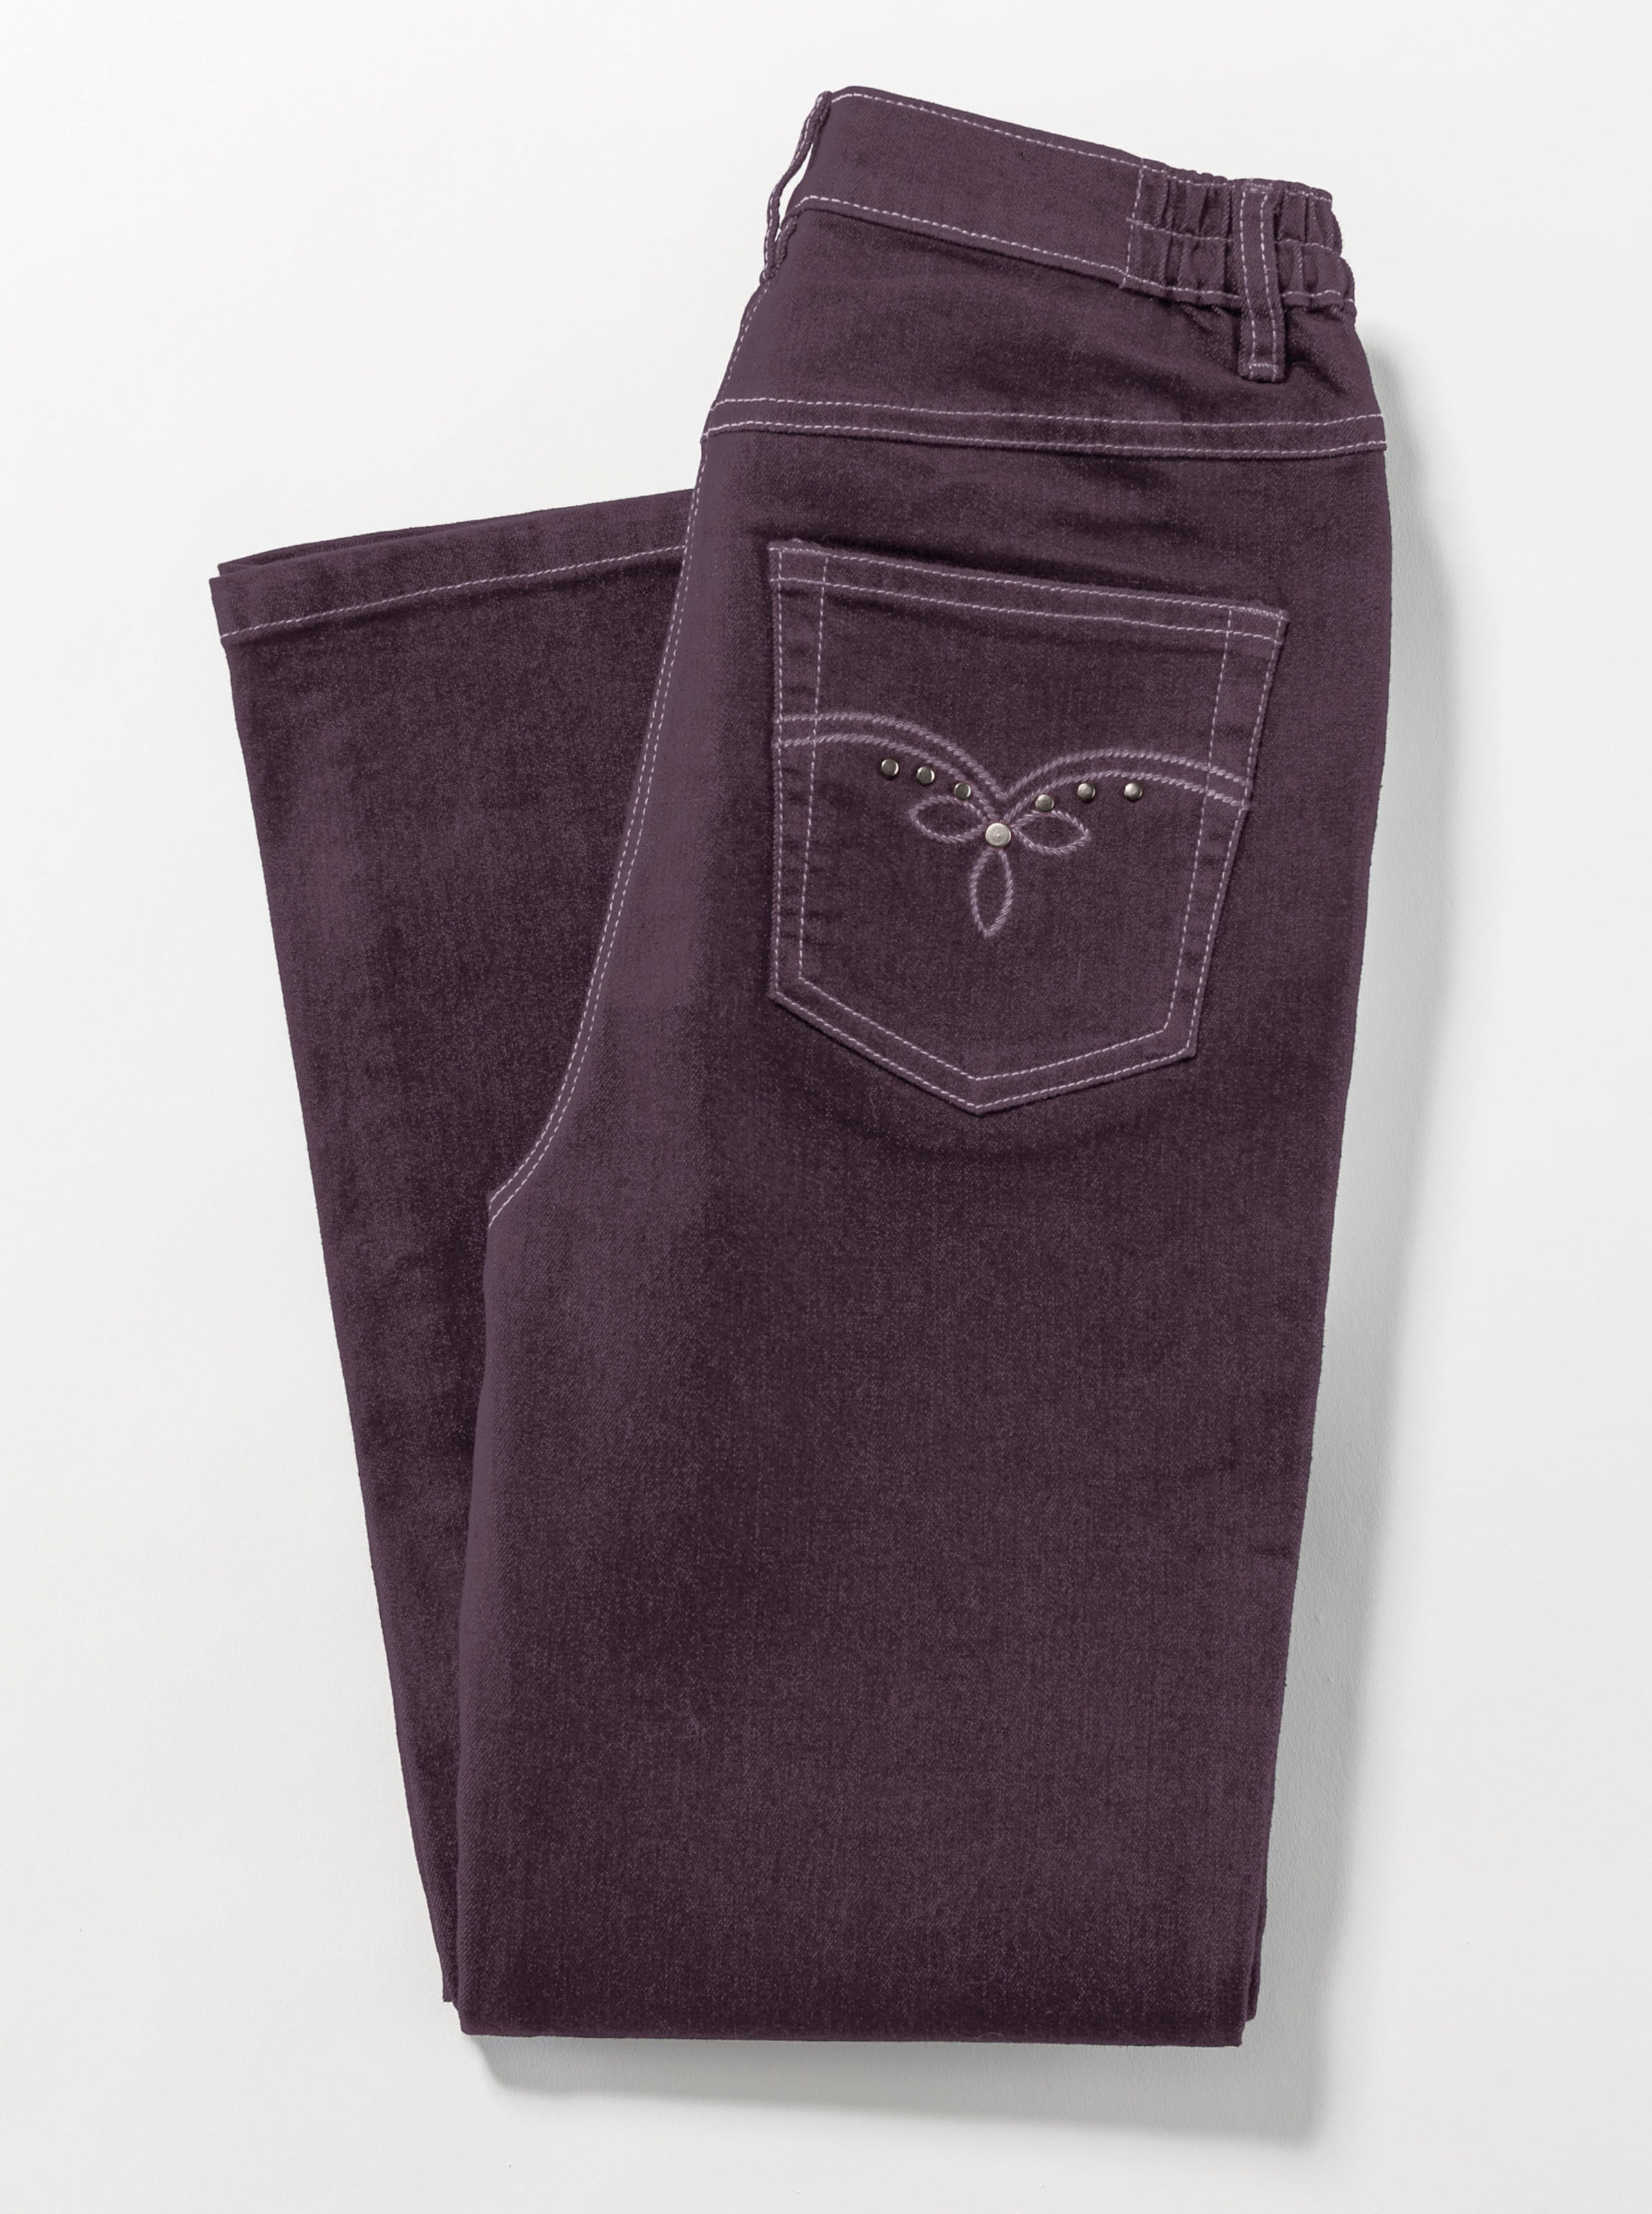 Dank Der günstig Kaufen-5-Pocket-Jeans in aubergine von heine. 5-Pocket-Jeans in aubergine von heine <![CDATA[Die Jeans in 5-Pocket-Form ist dank seitlichem Dehnbund besonders komfortabel. 2 runde Taschen vorne. 1 Münztasche. 2 Taschen hinten mit schmückender Stickerei und Dek